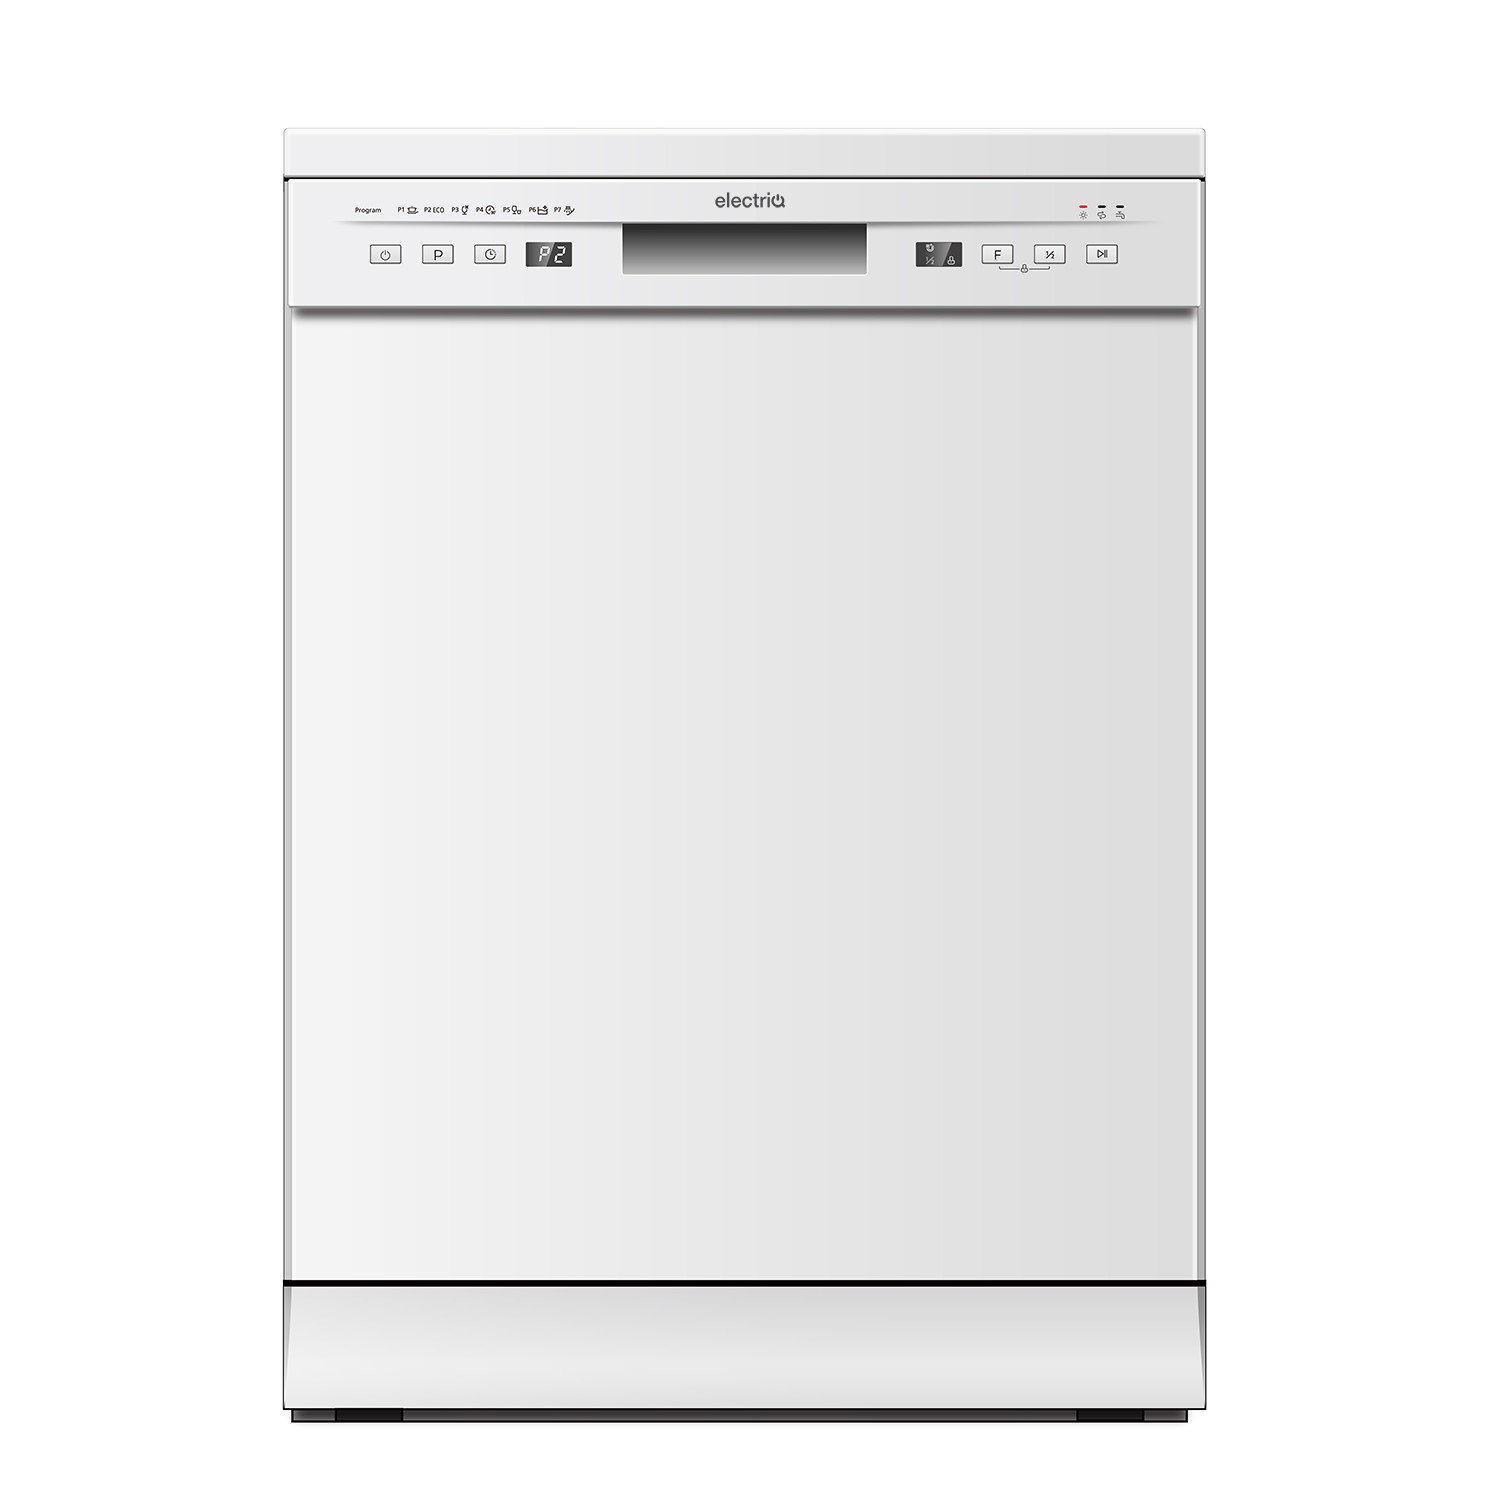 electriQ Freestanding Dishwasher - White